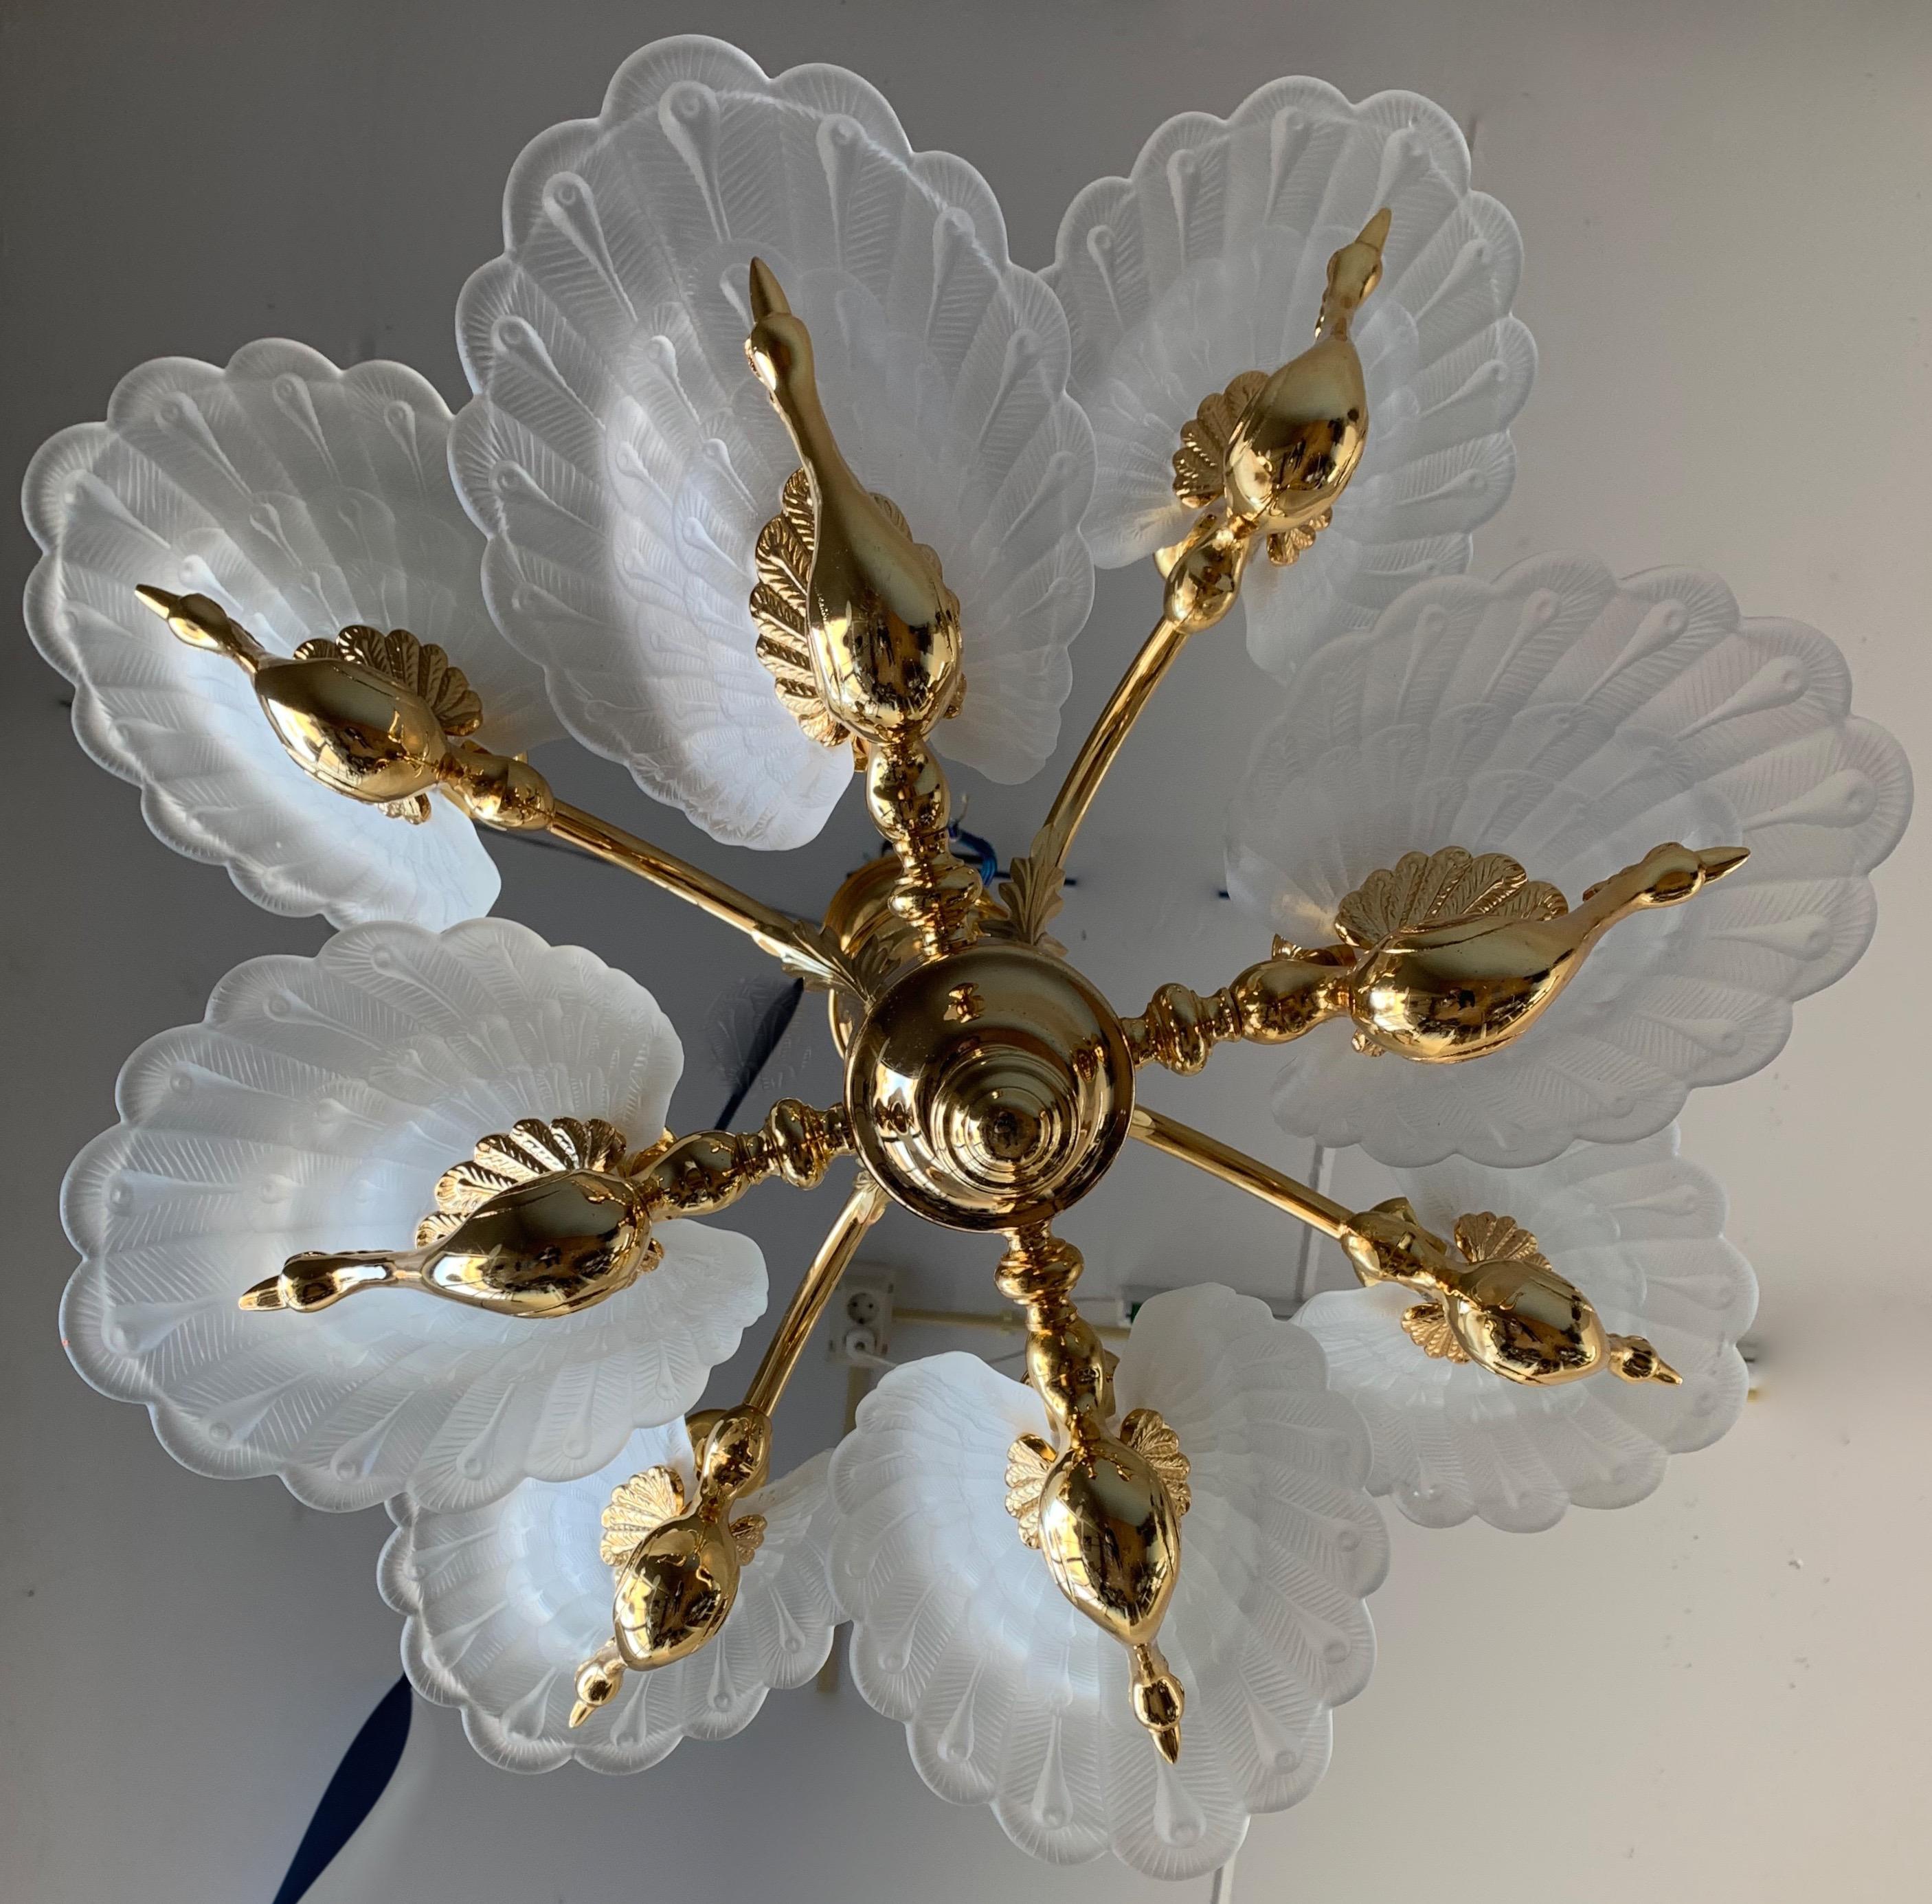 Rare Midcentury Chandelier / Pendant w. Golden Bronze & Glass Peacock Sculptures 2